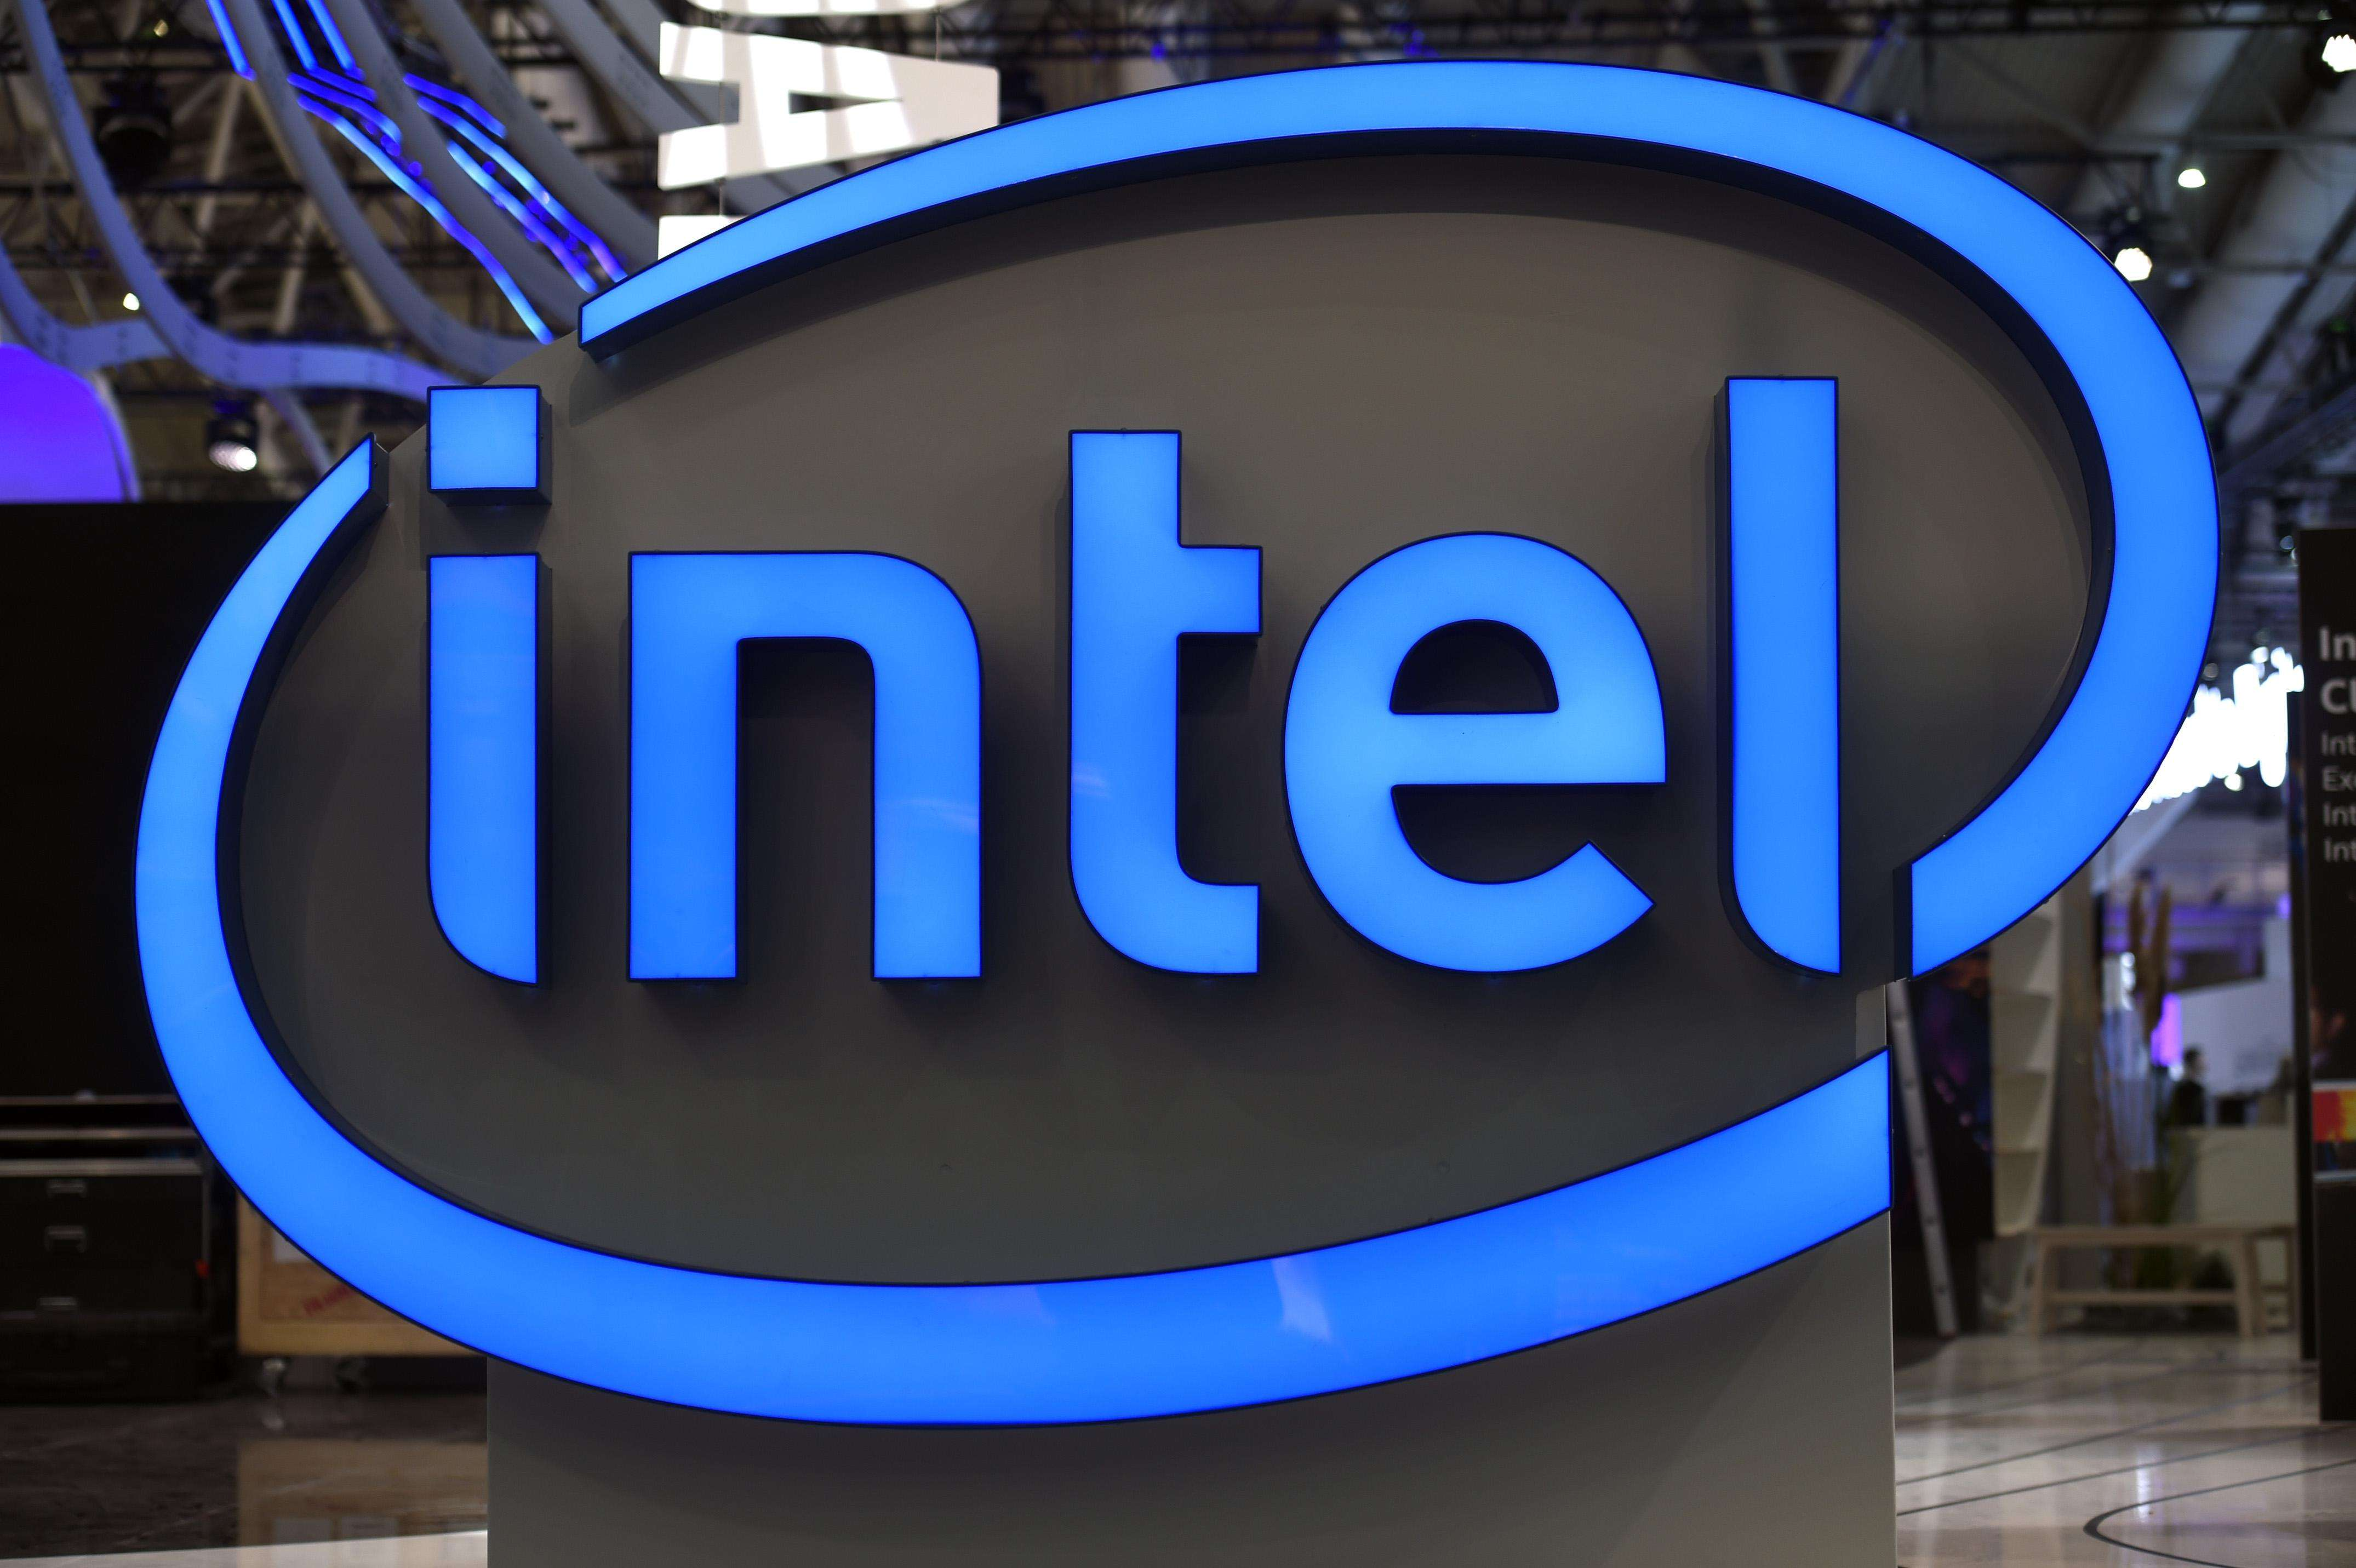 العديد من العمالقة العالميين يتحدون!تتعاون Intel مع العديد من المؤسسات لنشر حل الشبكة الخاصة 5G